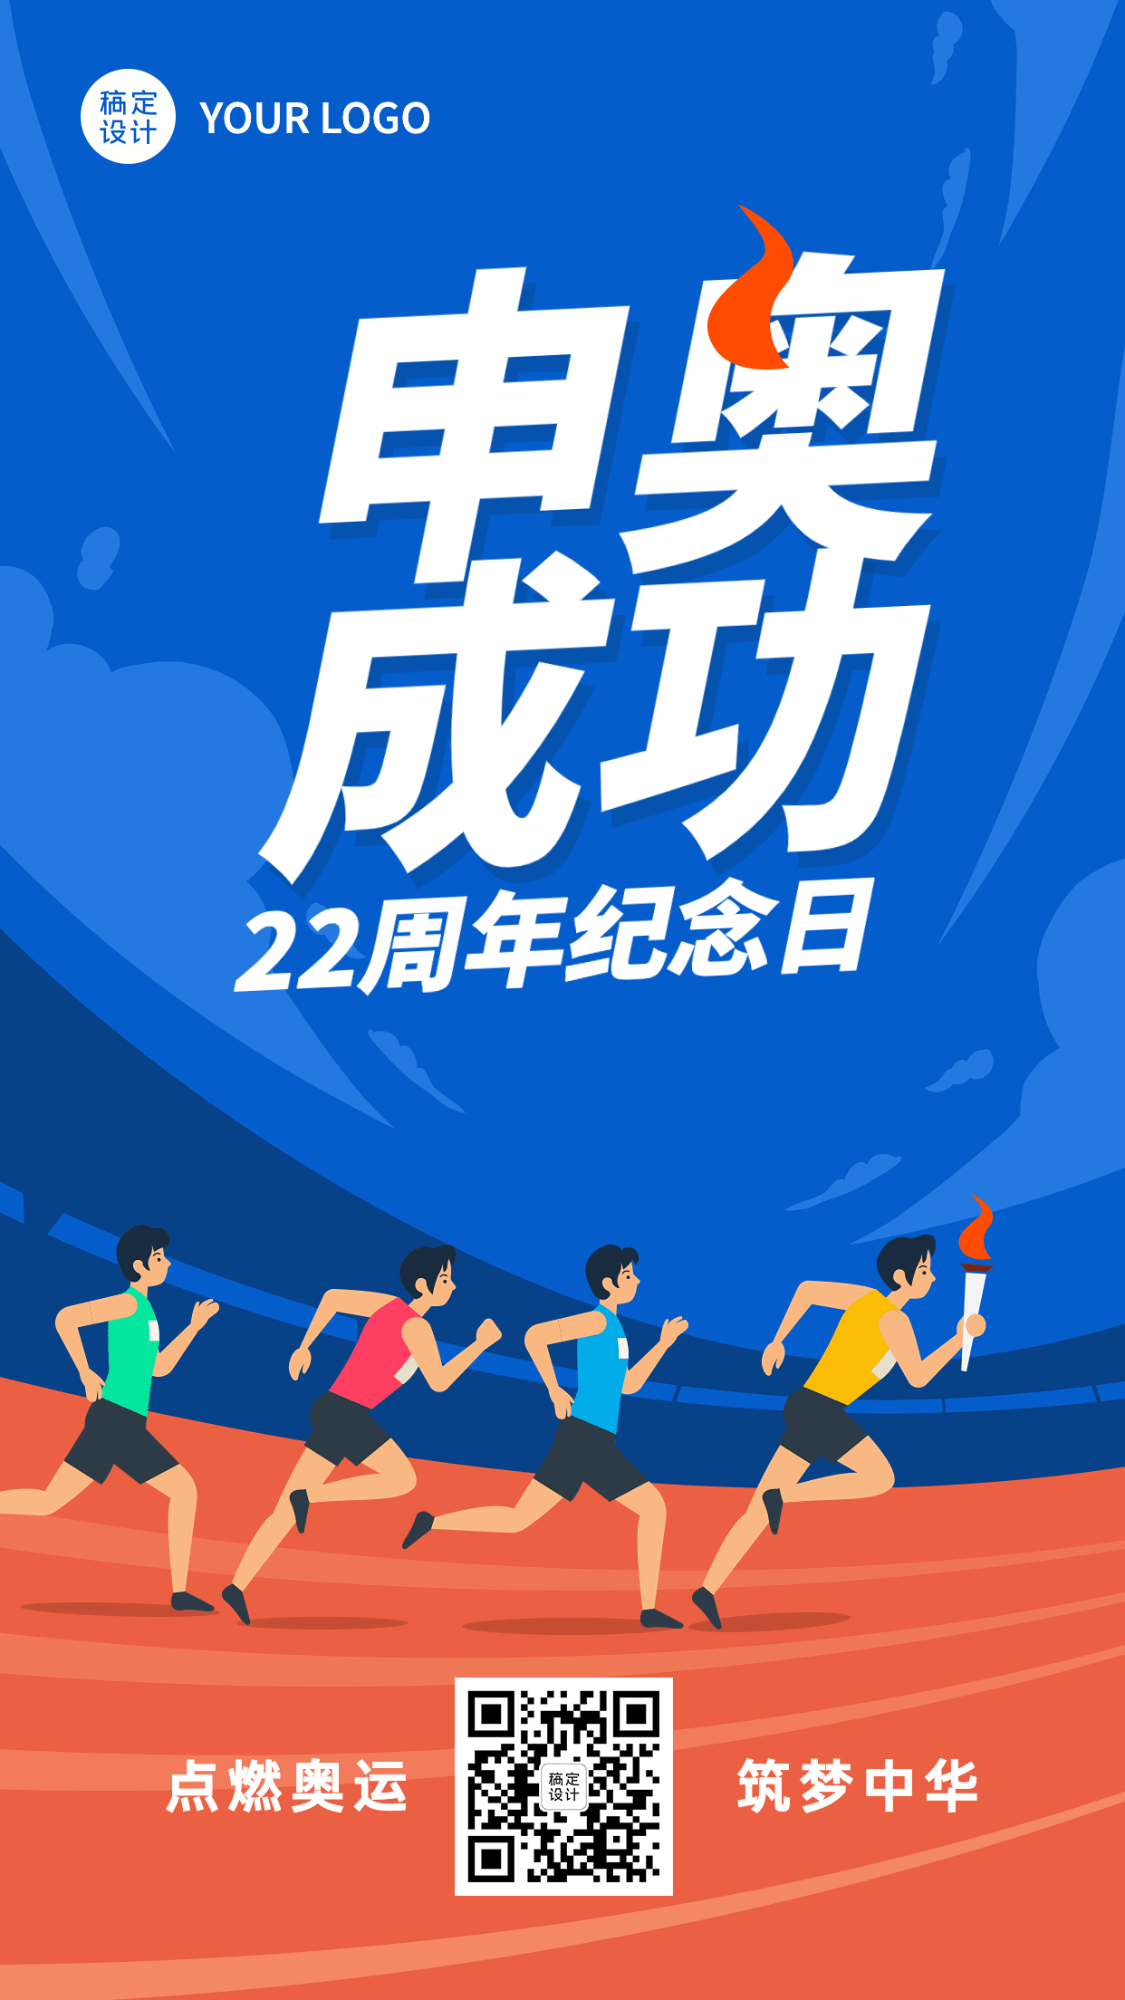 北京申奥成功纪念日节日宣传插画手机海报预览效果